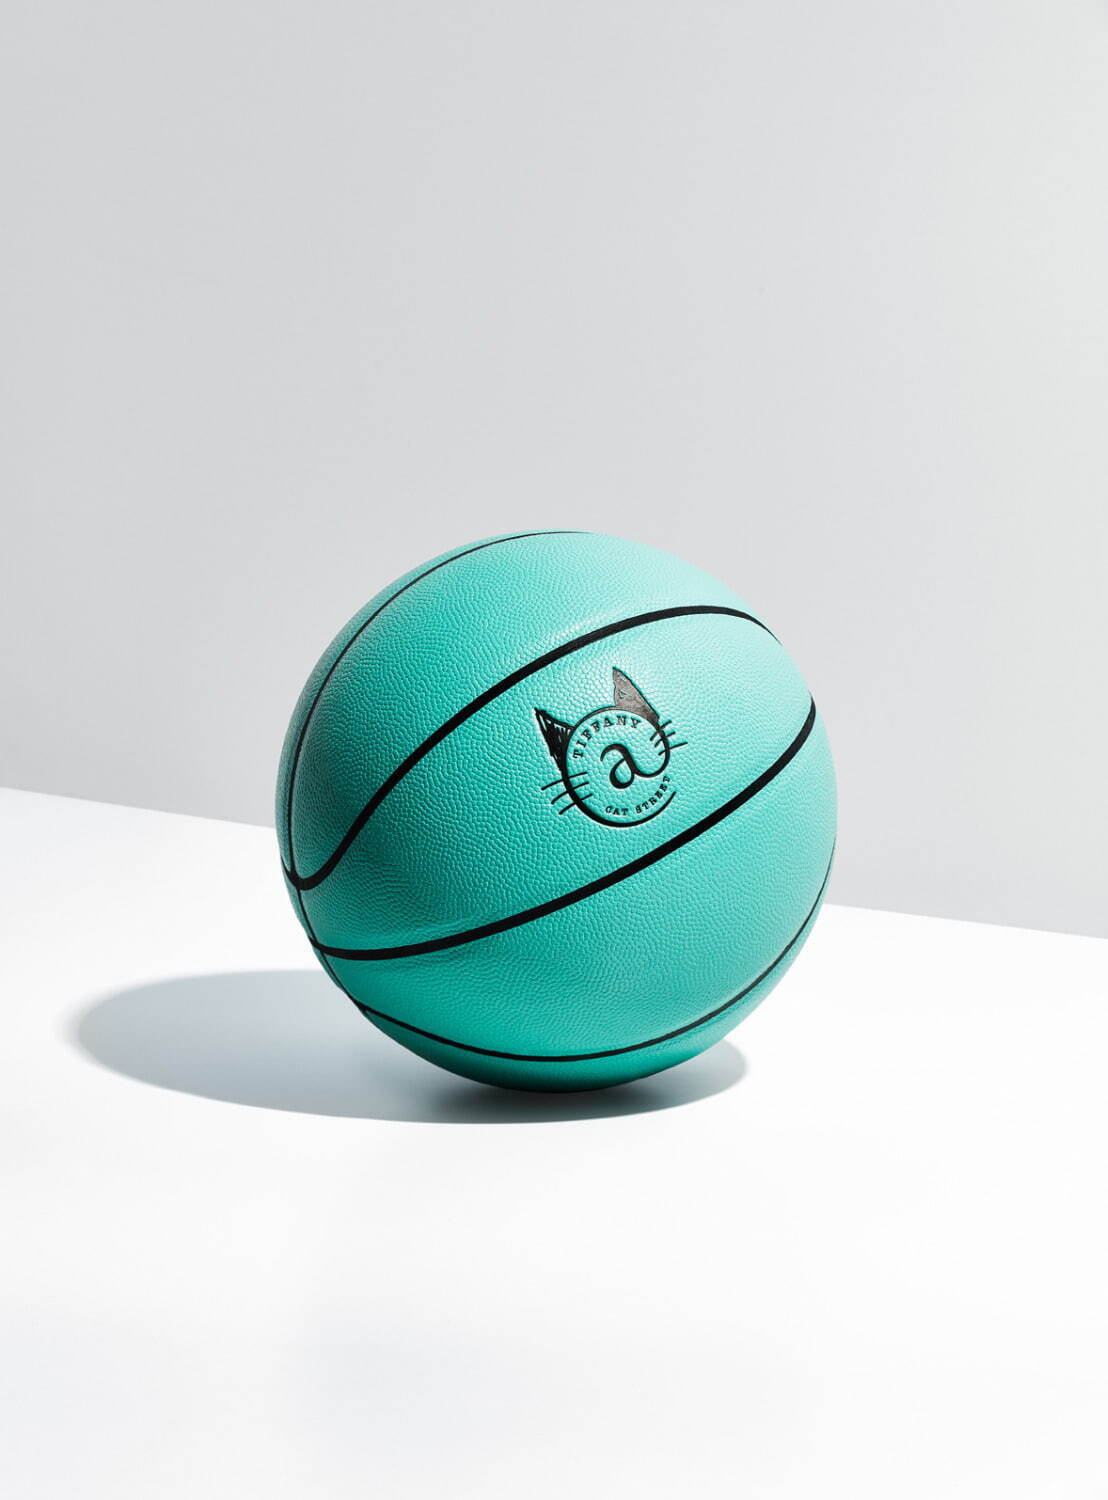 Tiffany&Co ティファニー バスケットボール7号-